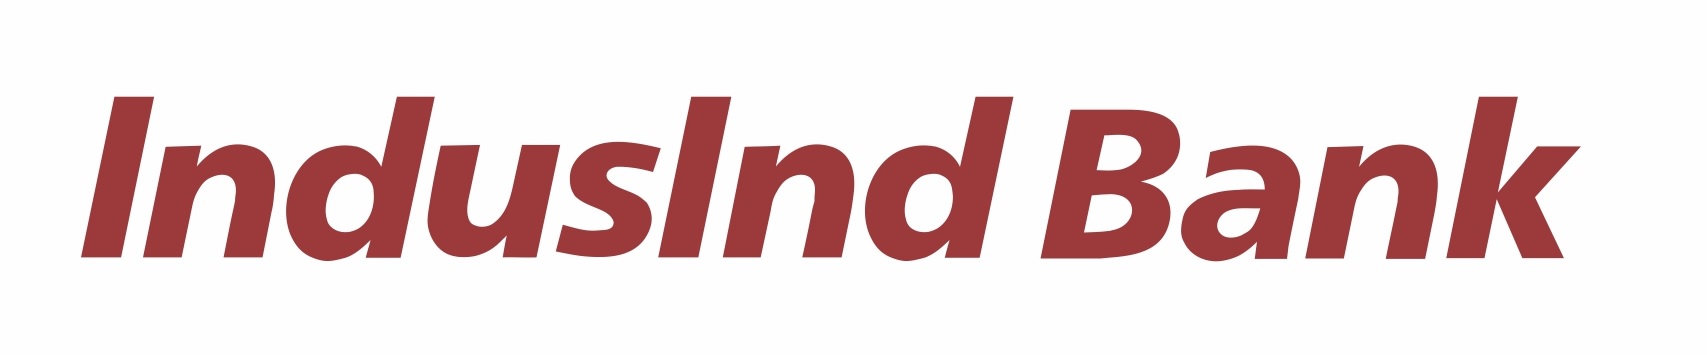 IndusInd Bank Brand Logo